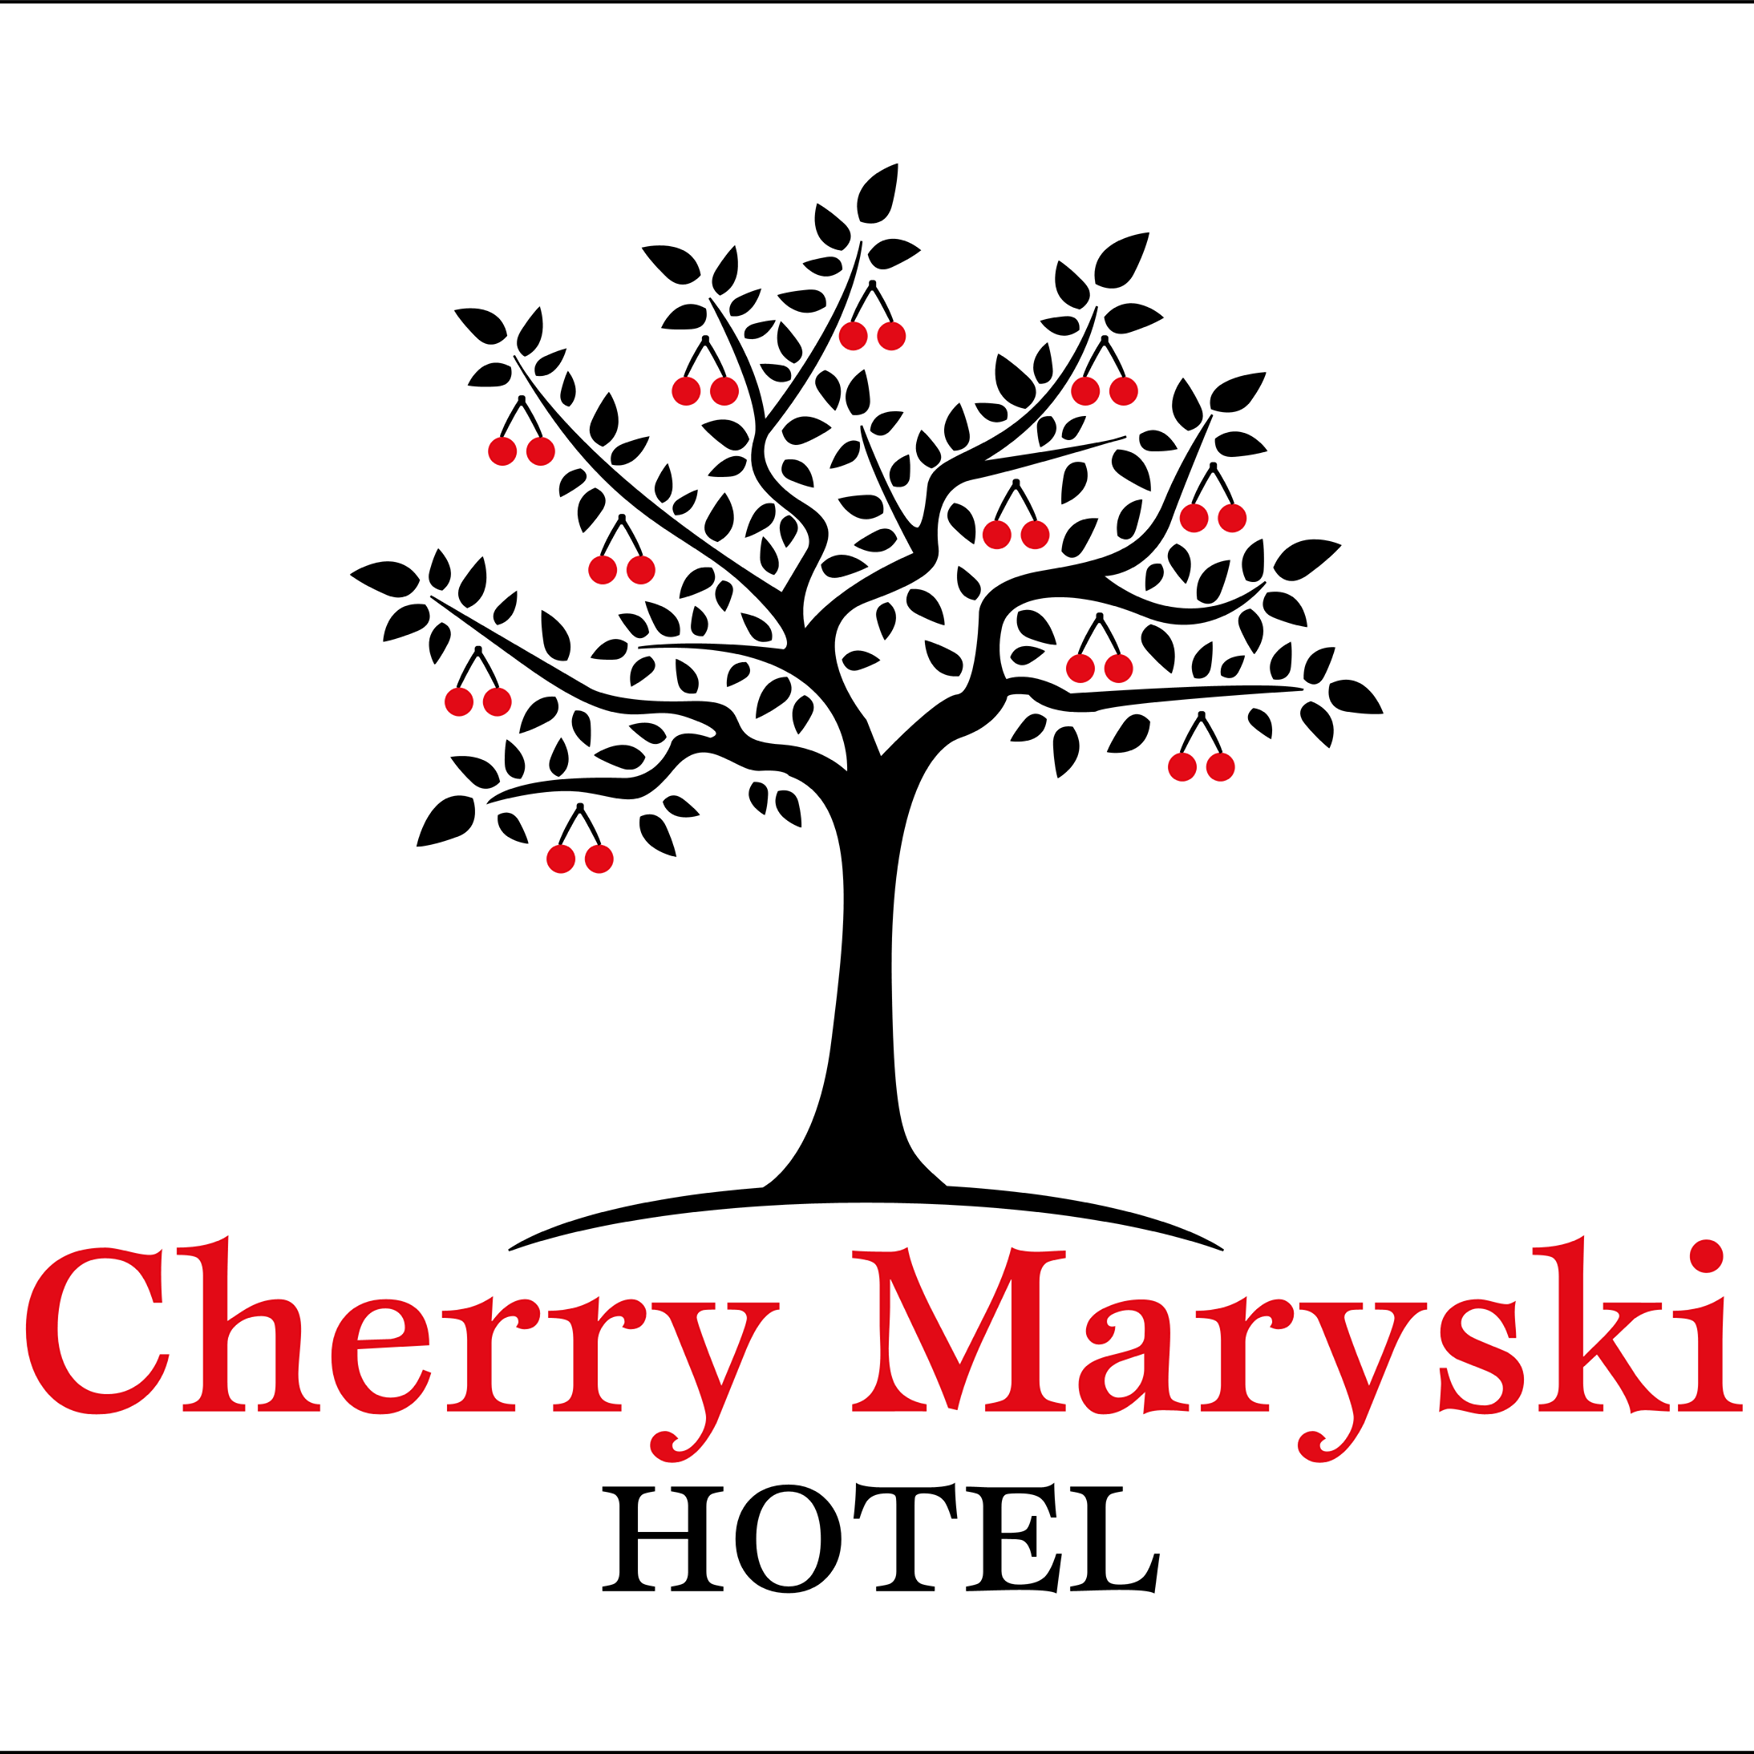 Cherry maryski hotel